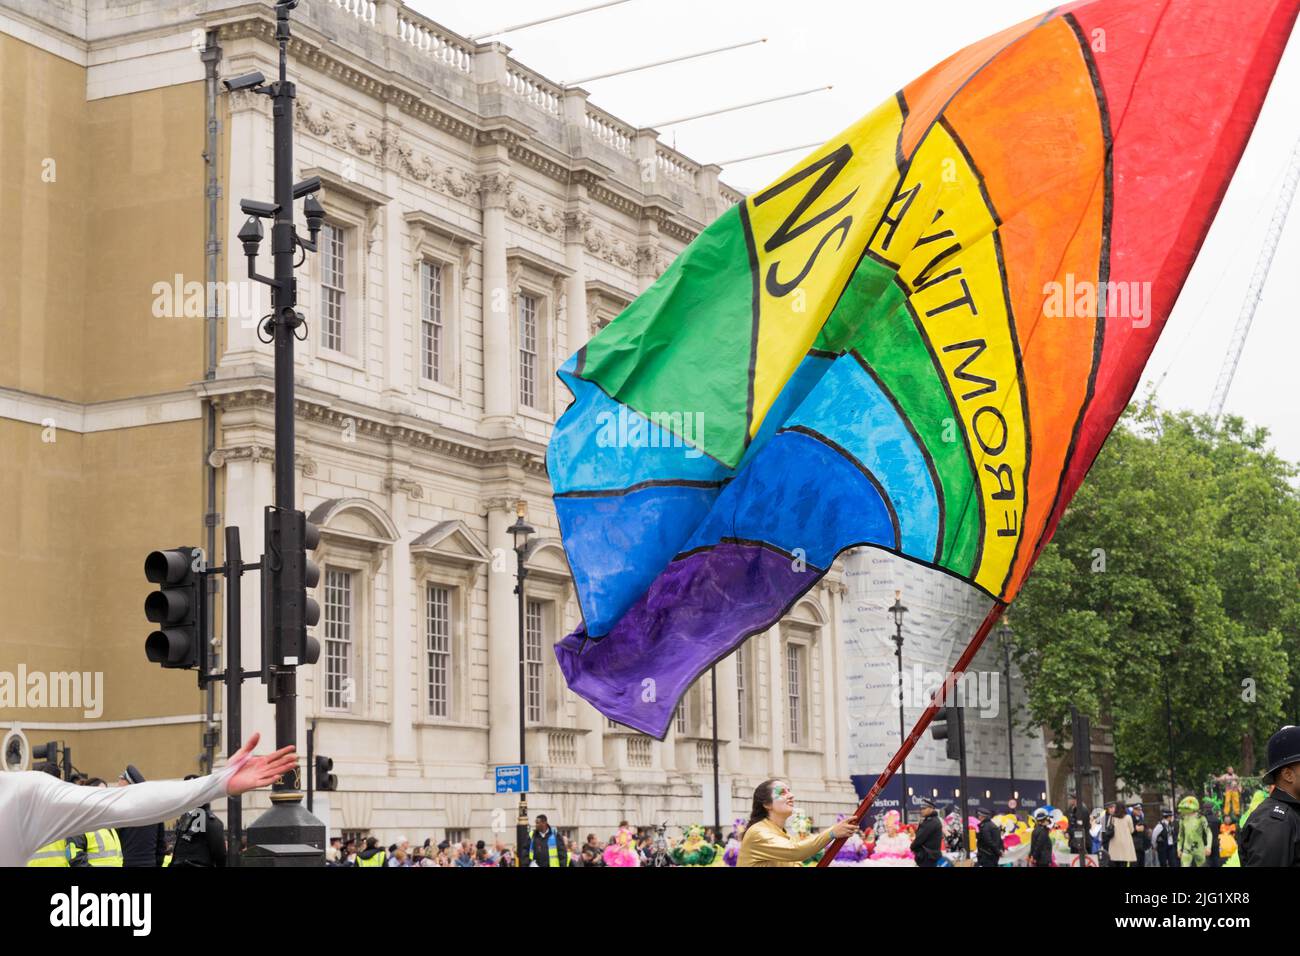 drapeau rainbows vu pendant le défilé de jubilé de platine de la reine Westmister Londres UK Banque D'Images